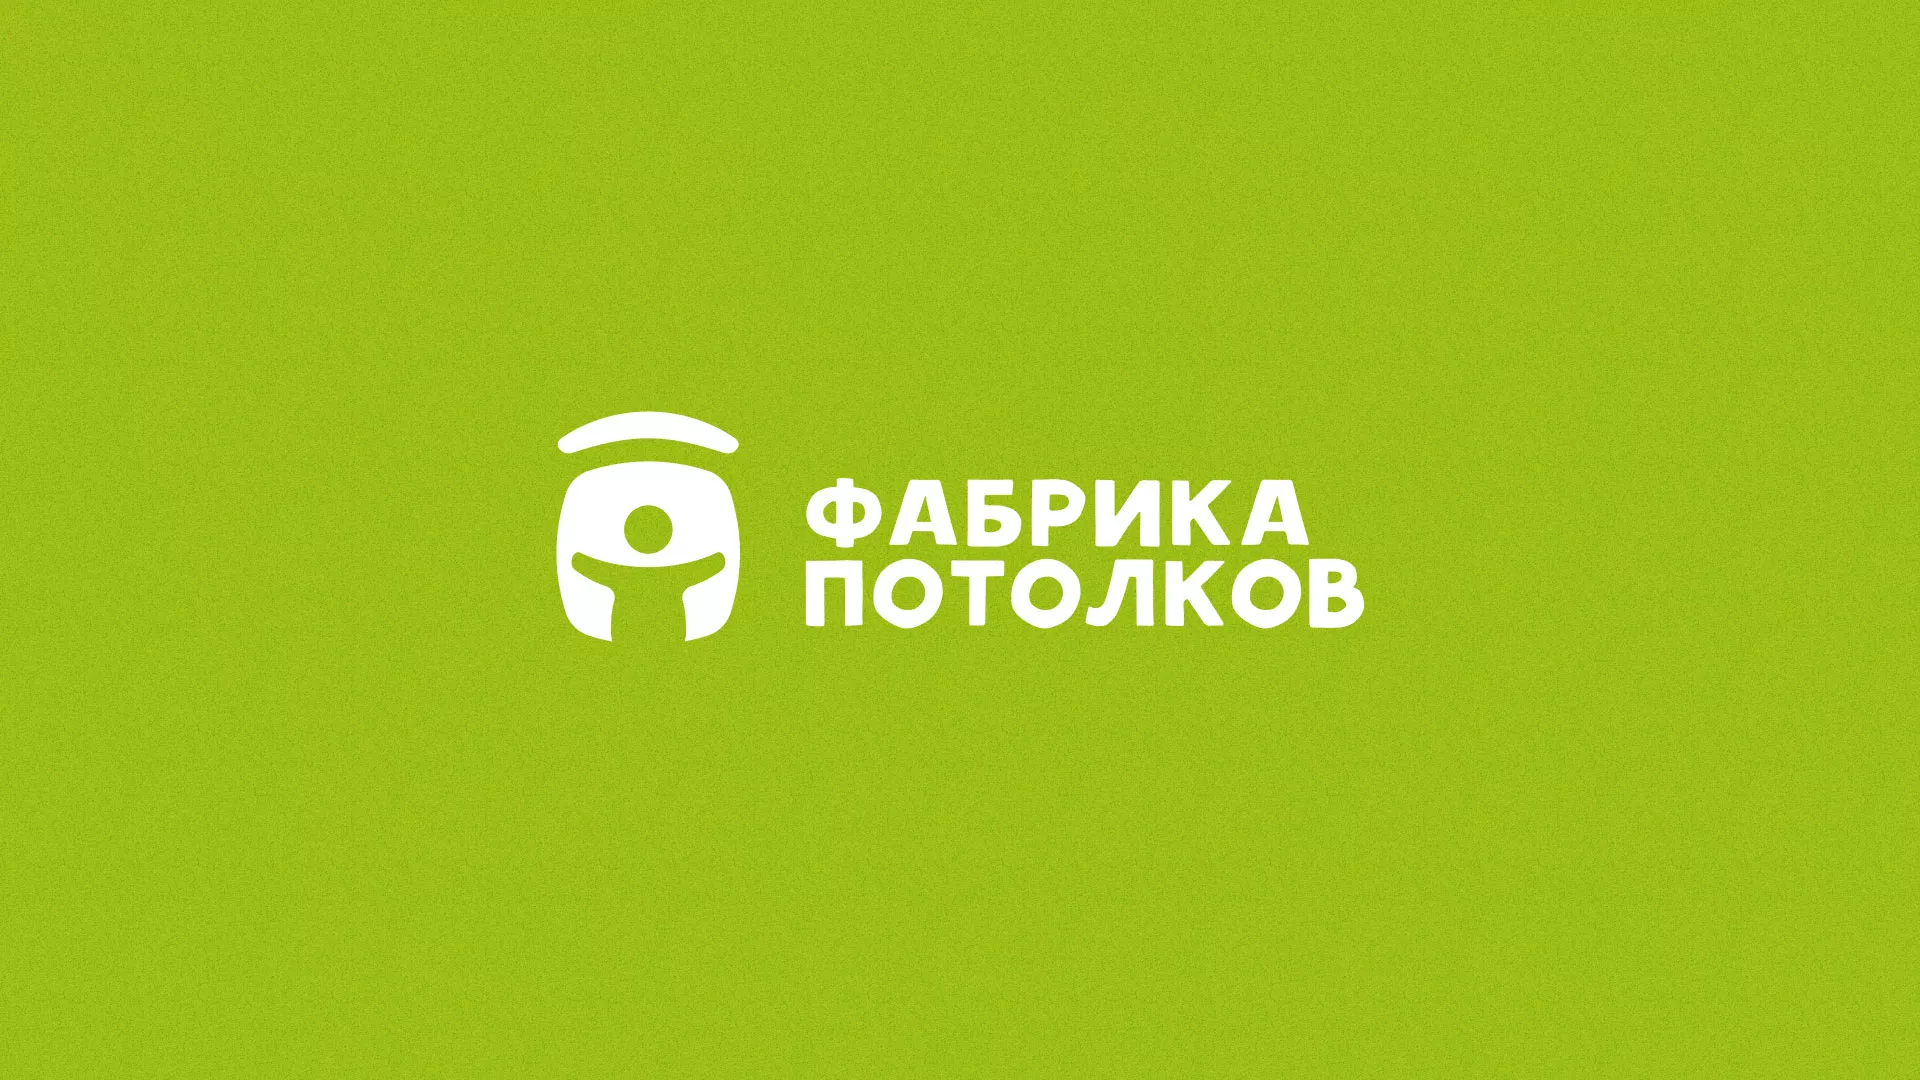 Разработка логотипа для производства натяжных потолков в Пушкино